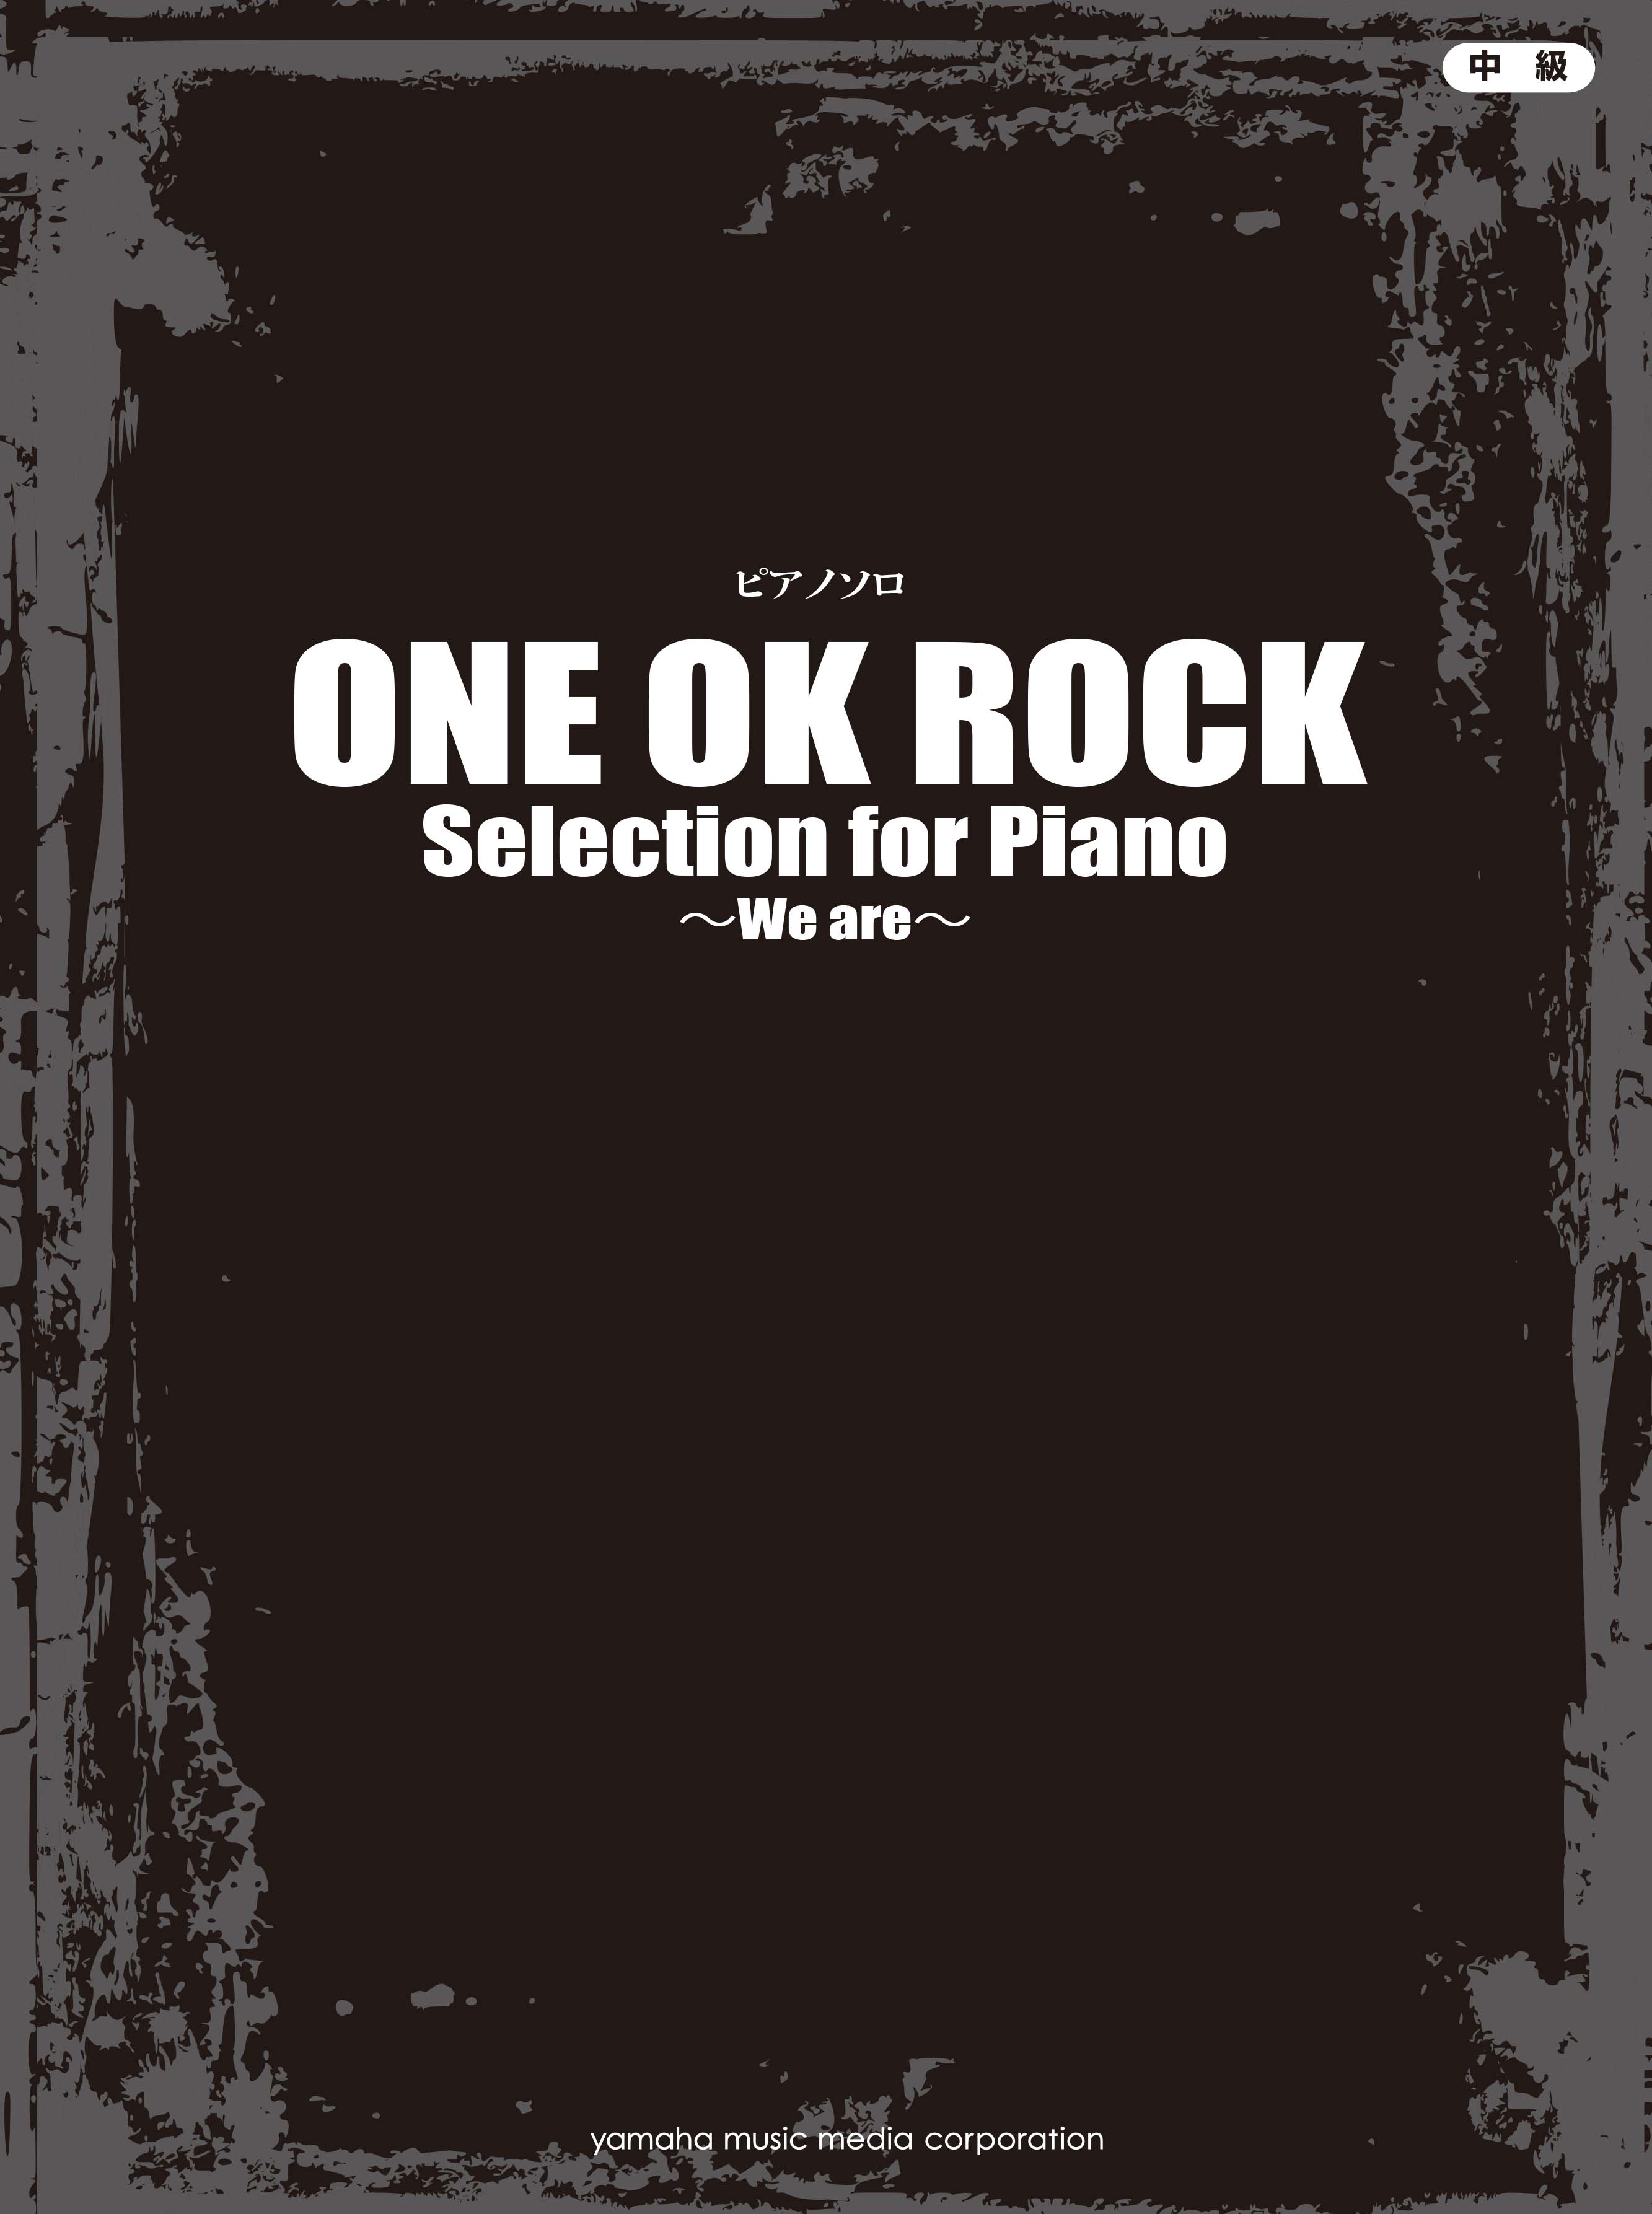 ピアノソロ楽譜集 One Ok Rock Selection For Piano We Are 3月25日発売 ワンオク 最新アルバム Ambitions までの楽曲をピアノソロで楽しめる ヤマハミュージックエンタテインメントホールディングスのプレスリリース